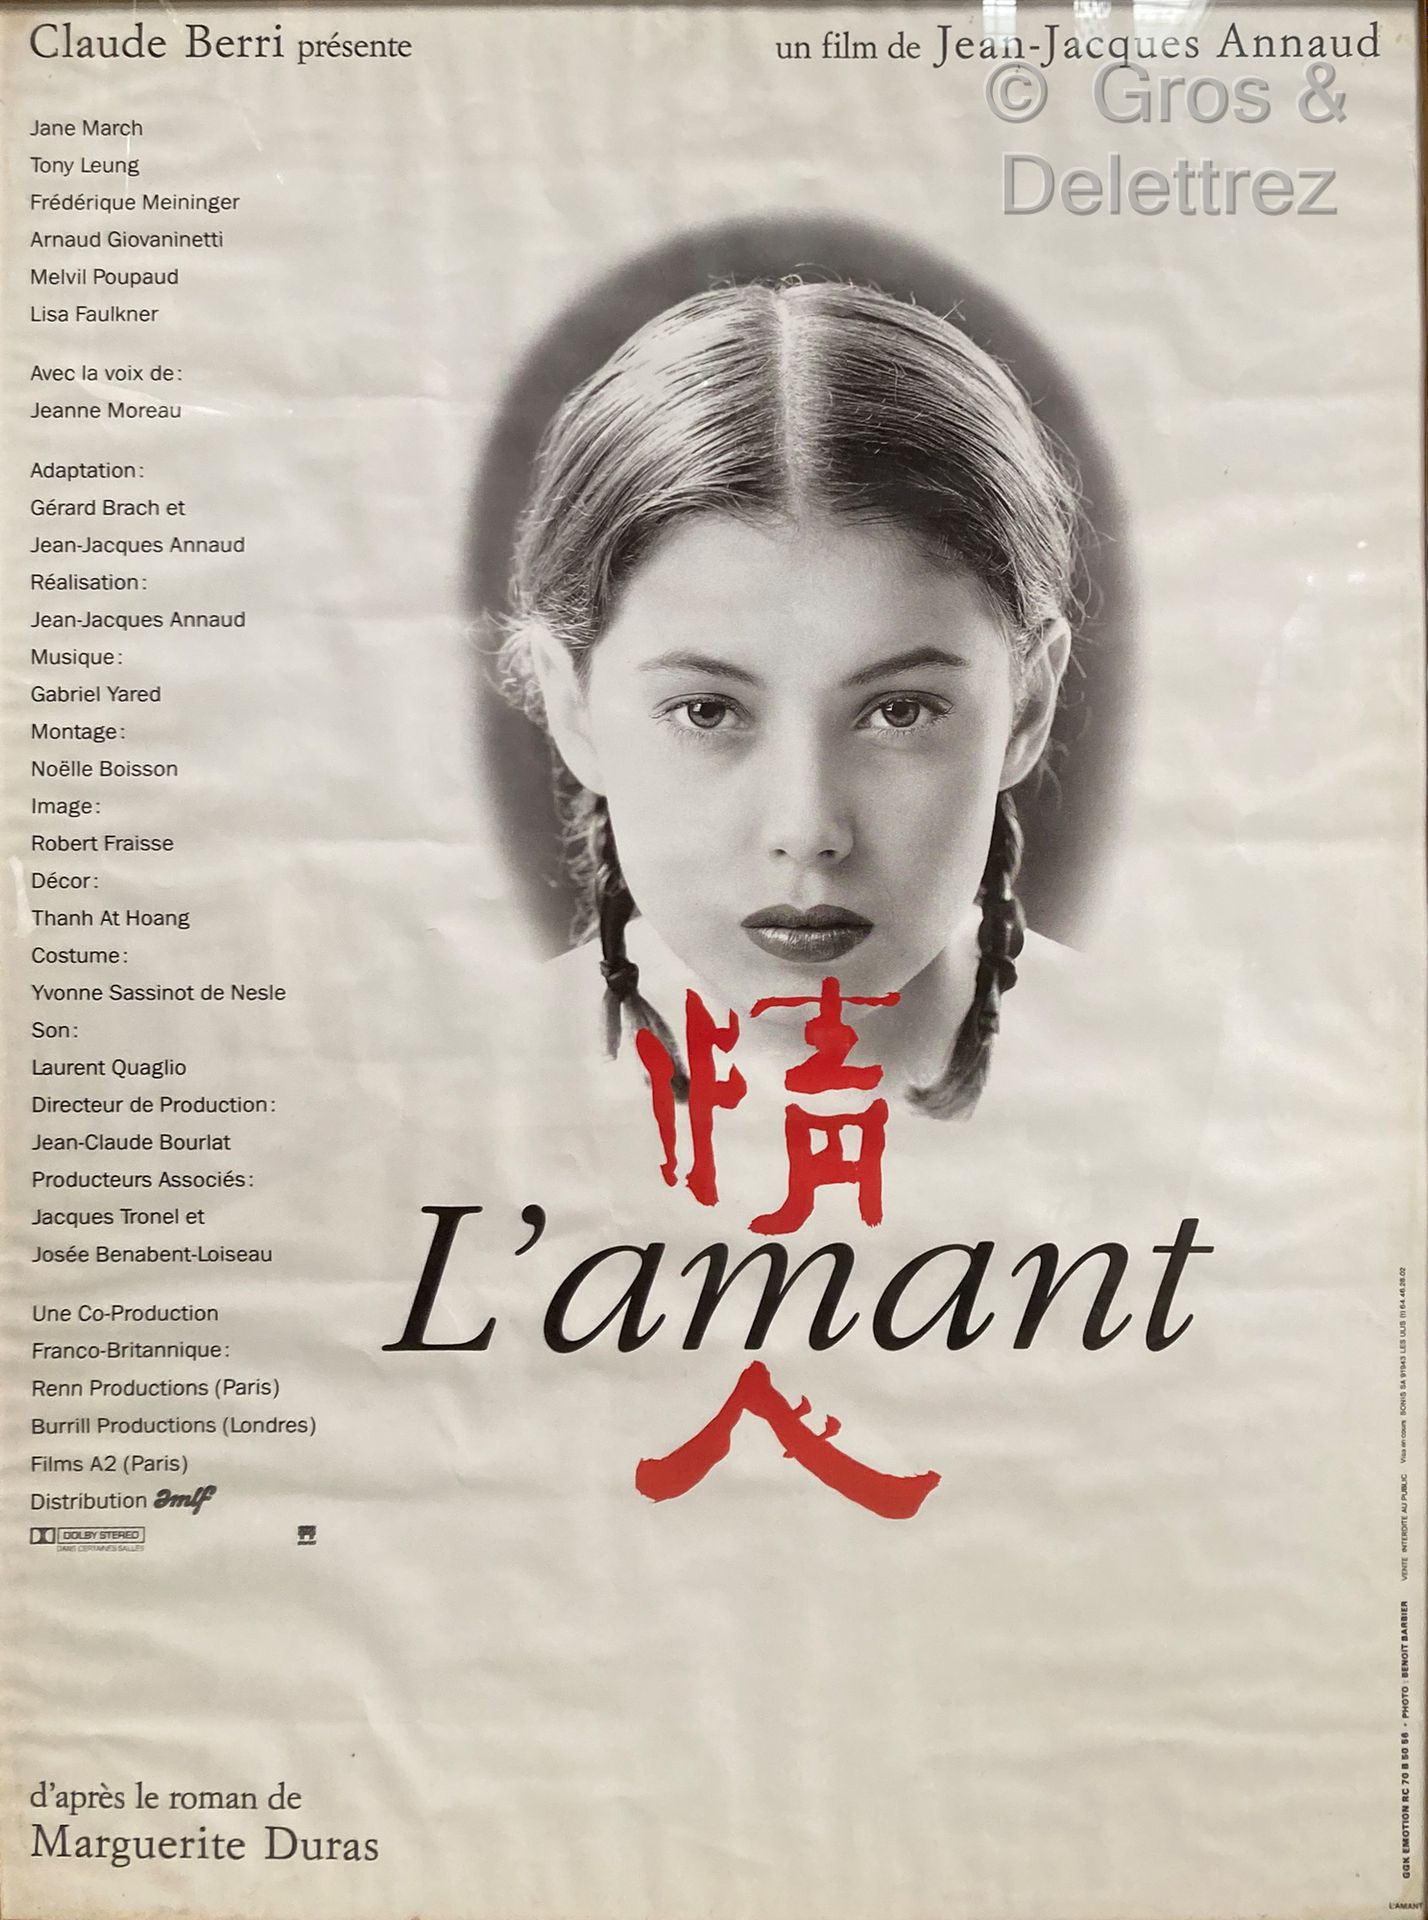 Jean-Jacques ANNAUD L'AMANTE

Locandina del film

78 x 57 cm sotto vetro